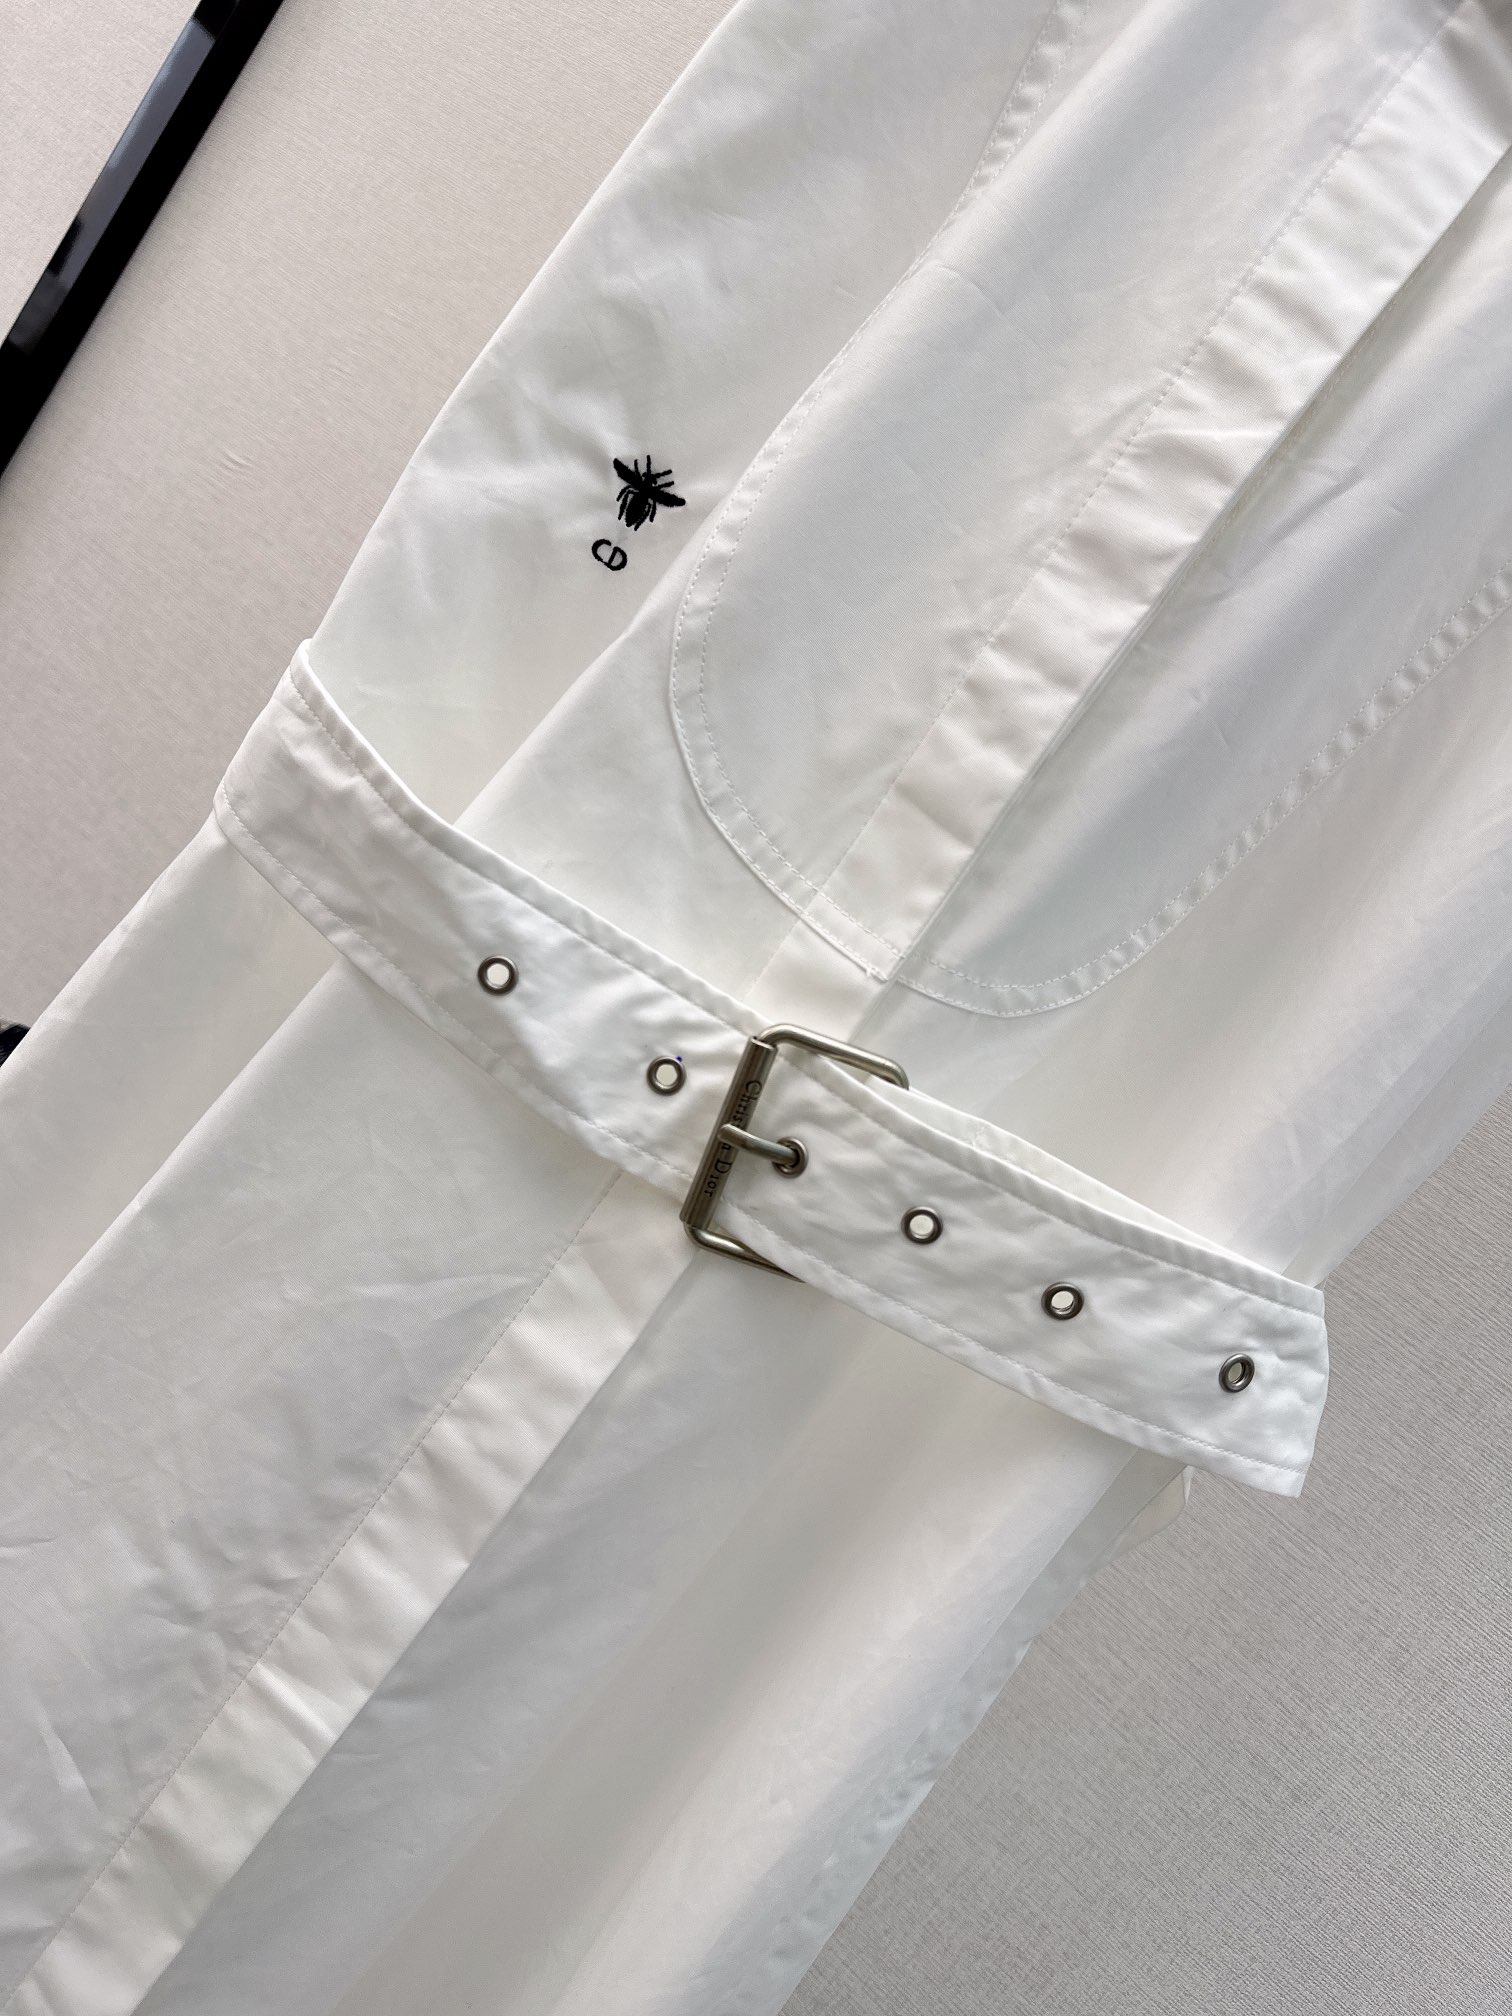 CD24Ss春夏最新款小立领无袖衬衣裙今年主款单品定型小立领设计无袖直筒版型腰间定制的五金本布腰带搭配定